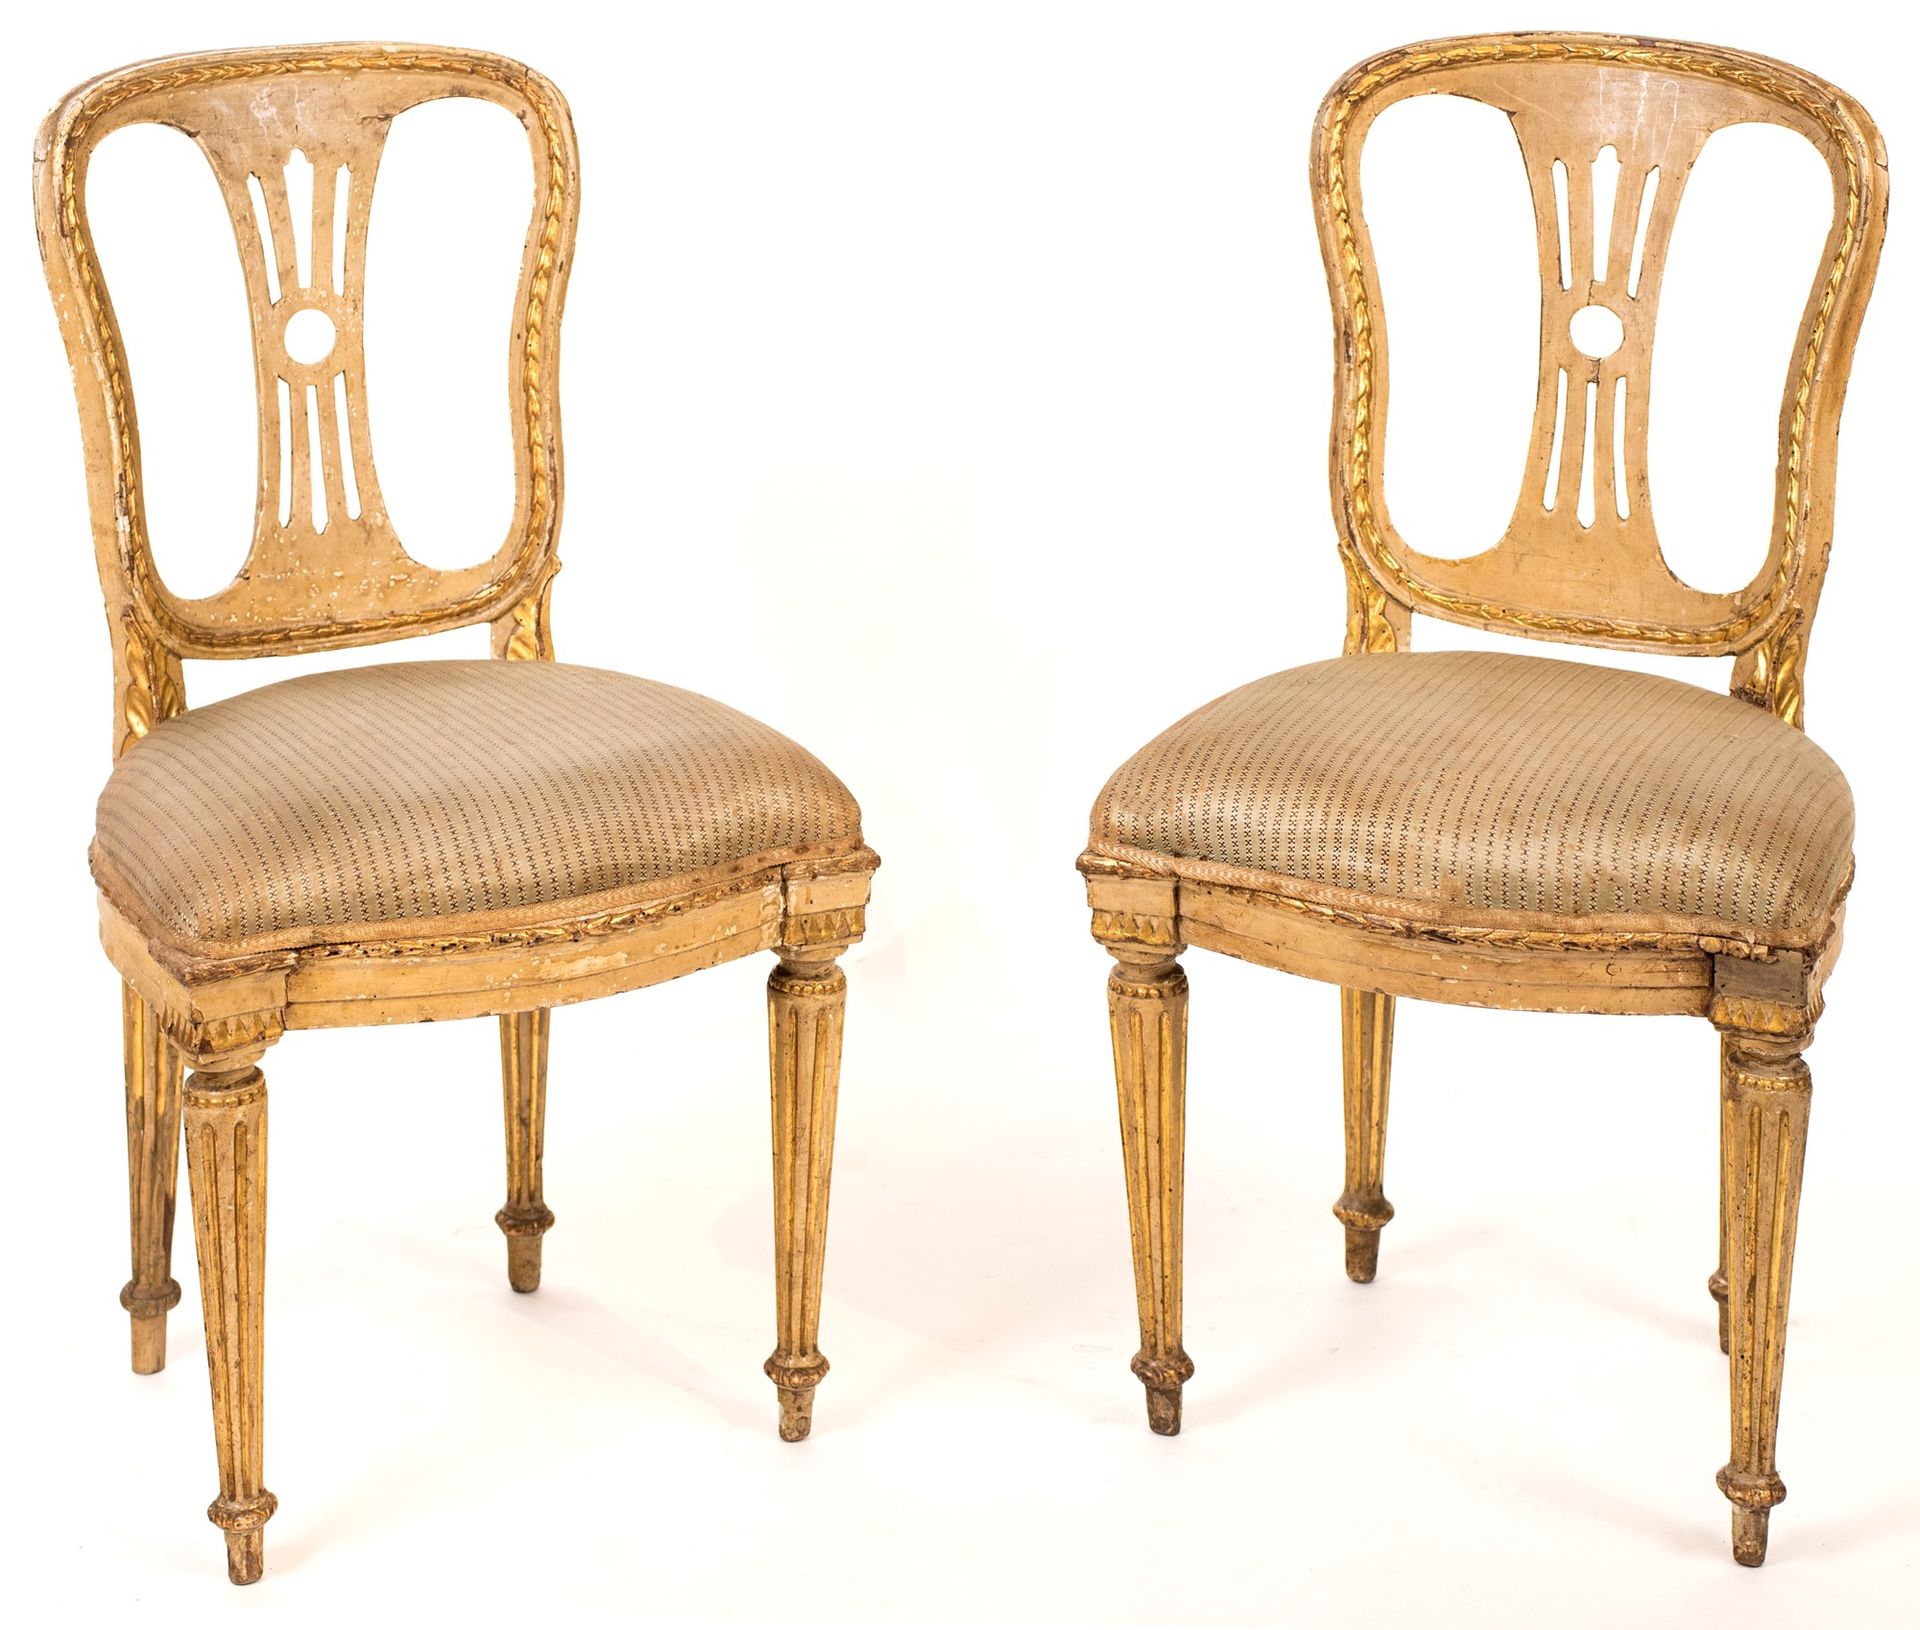 Pair of chairs in lacquered wood, late 18th century 沿着轮廓和装饰性浮雕镀金；开放式靠背，软垫座椅，有凹槽的&hellip;